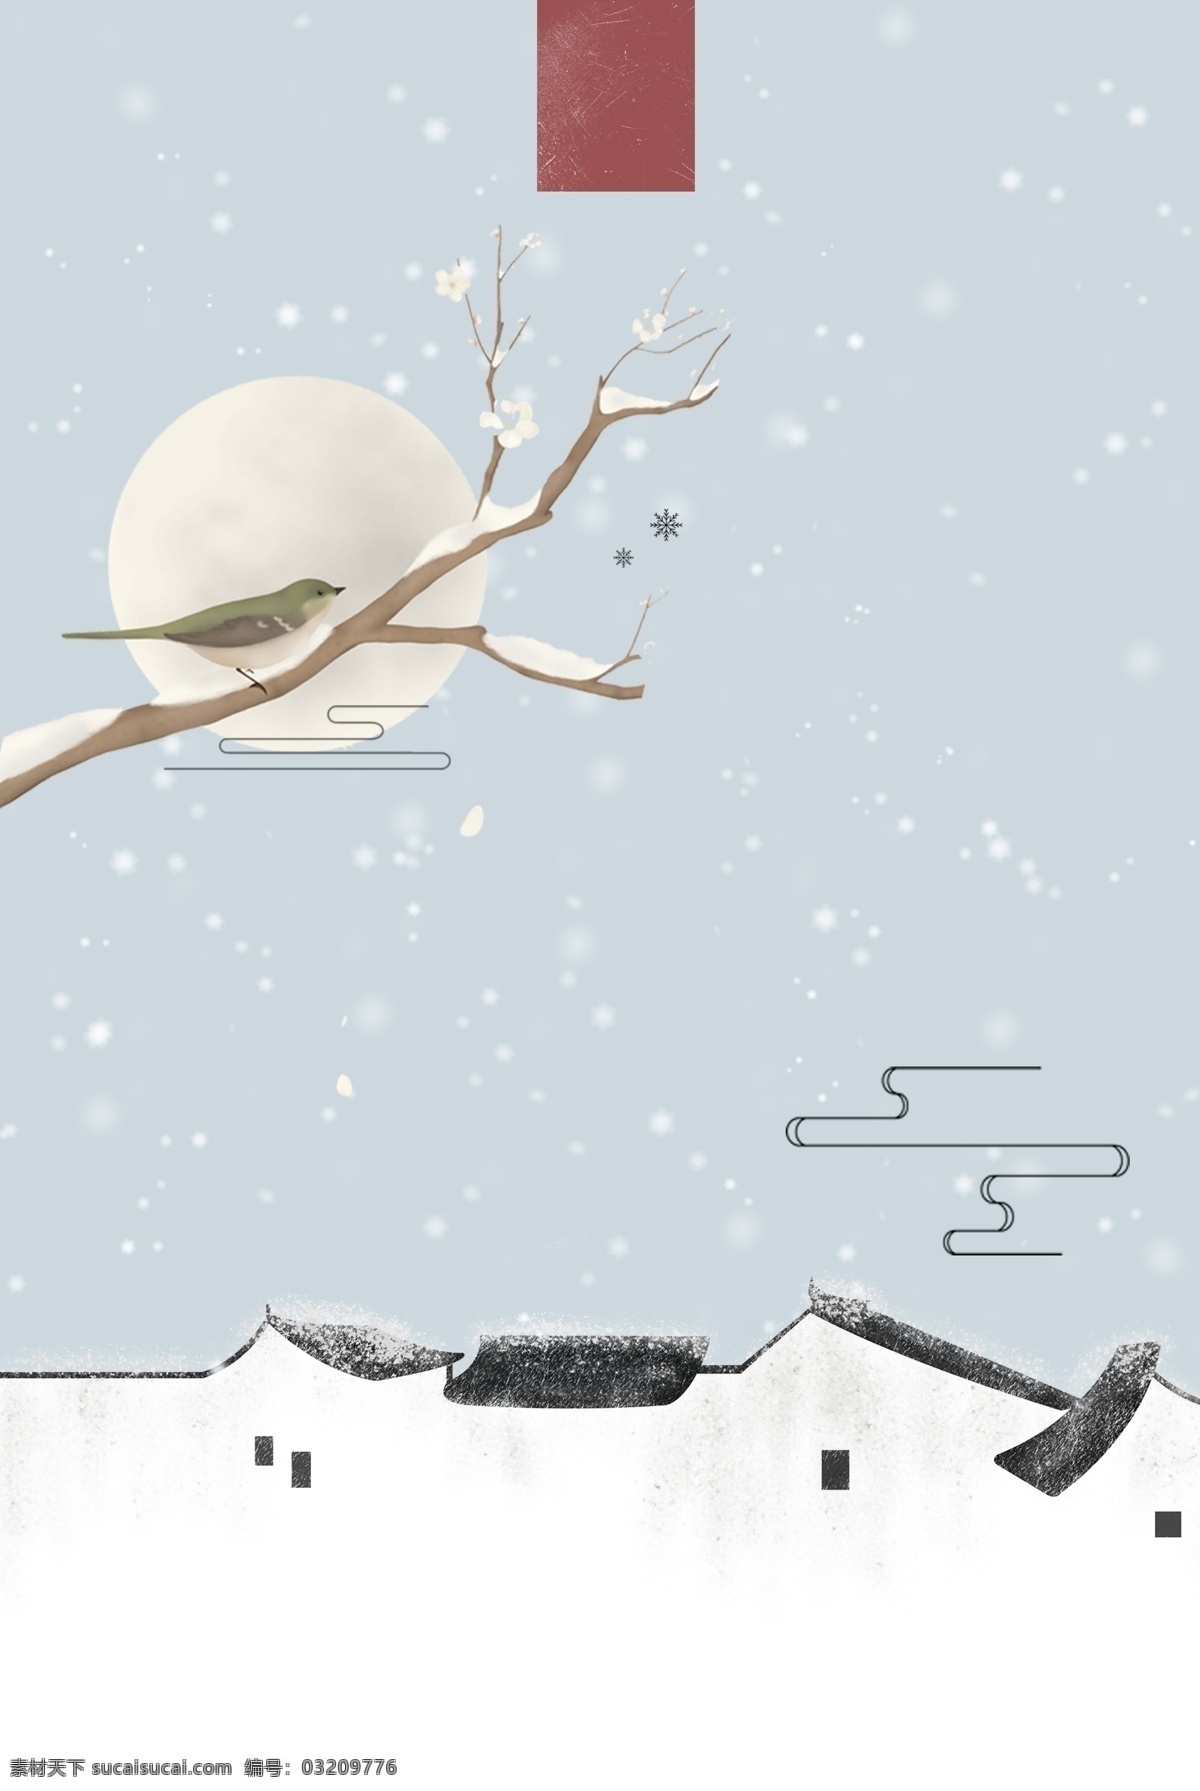 冬季 雪景 海报 背景 小鸟 海报背景 背景素材 广告背景 下雪 小雪 雪枝 屋顶 冬季背景